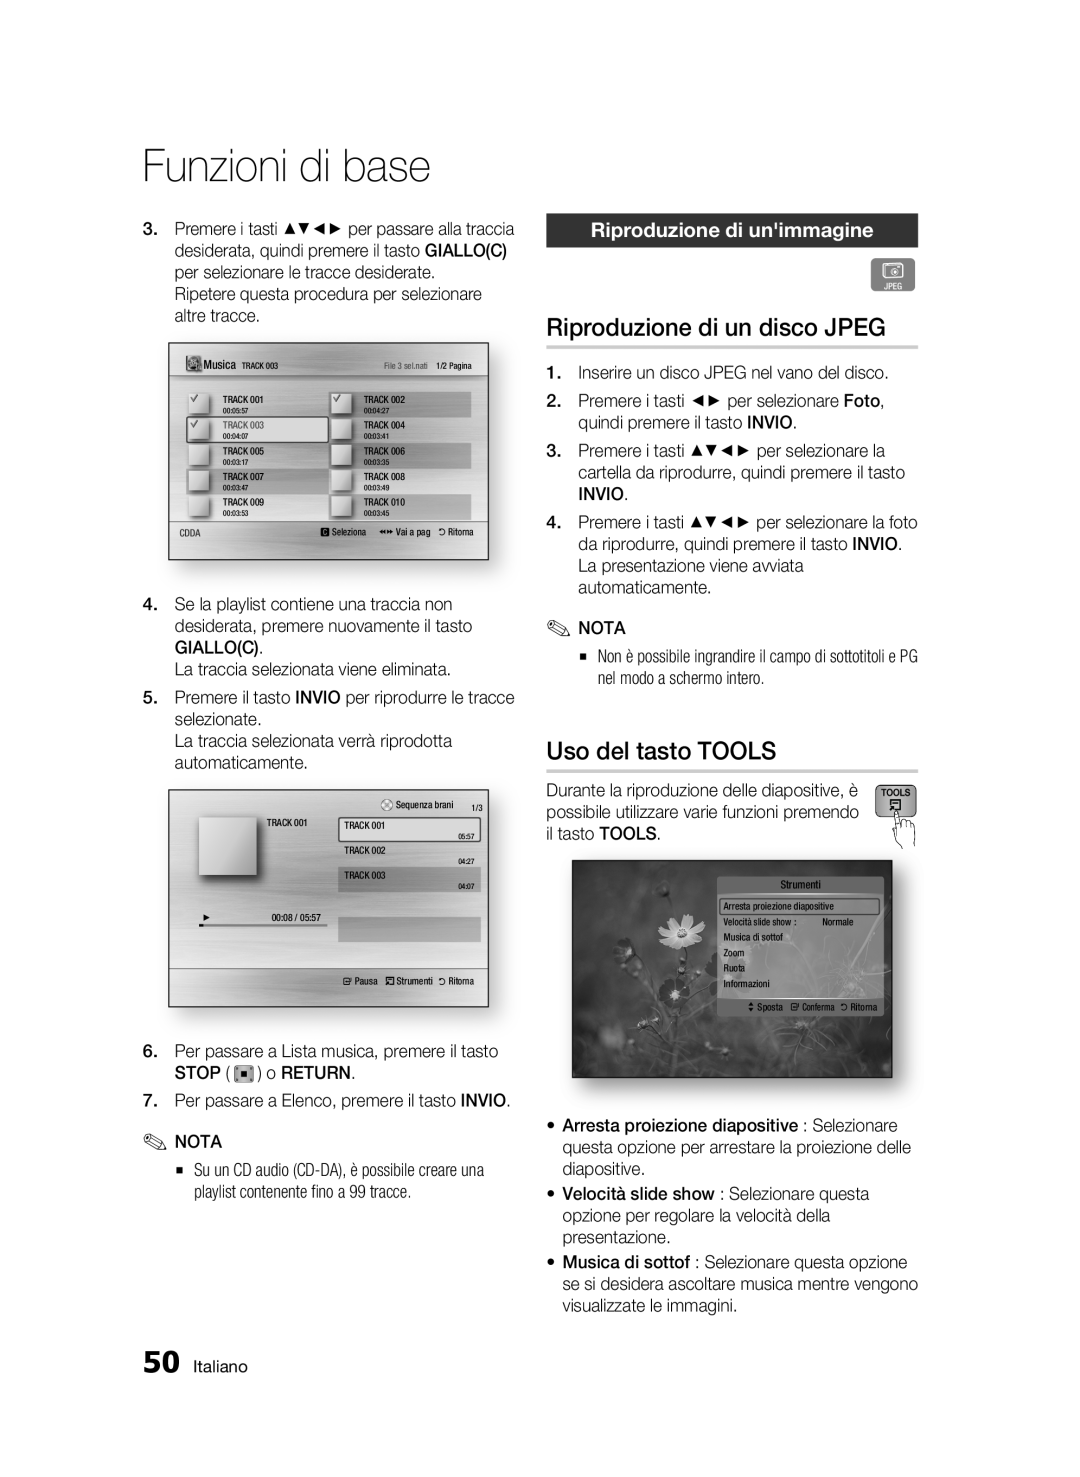 Samsung BD-C6500/XEF Riproduzione di un disco JPEG, Uso del tasto TOOLS, Riproduzione di unimmagine, Funzioni di base 